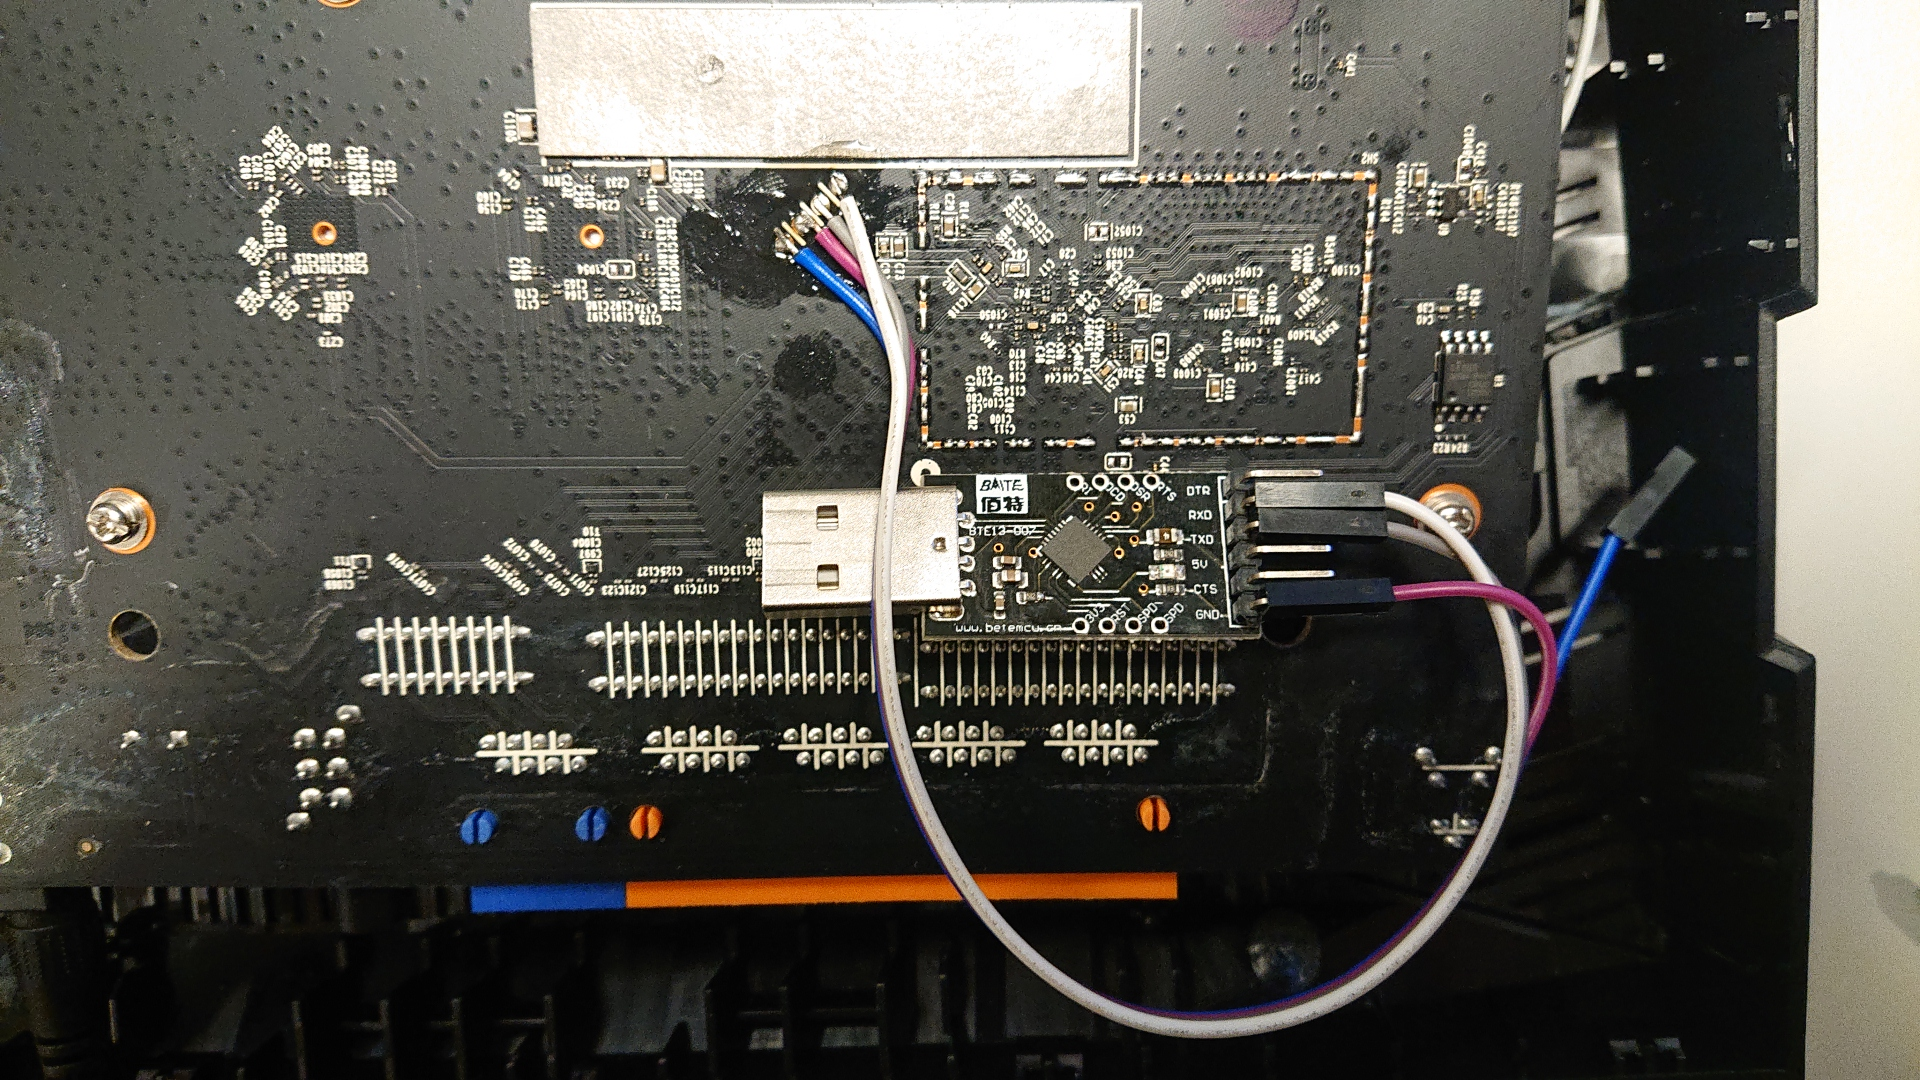 De printplaat van de AX23, met draadjes aan de seriele verbinding gesoldeerd en een USB-serial converter